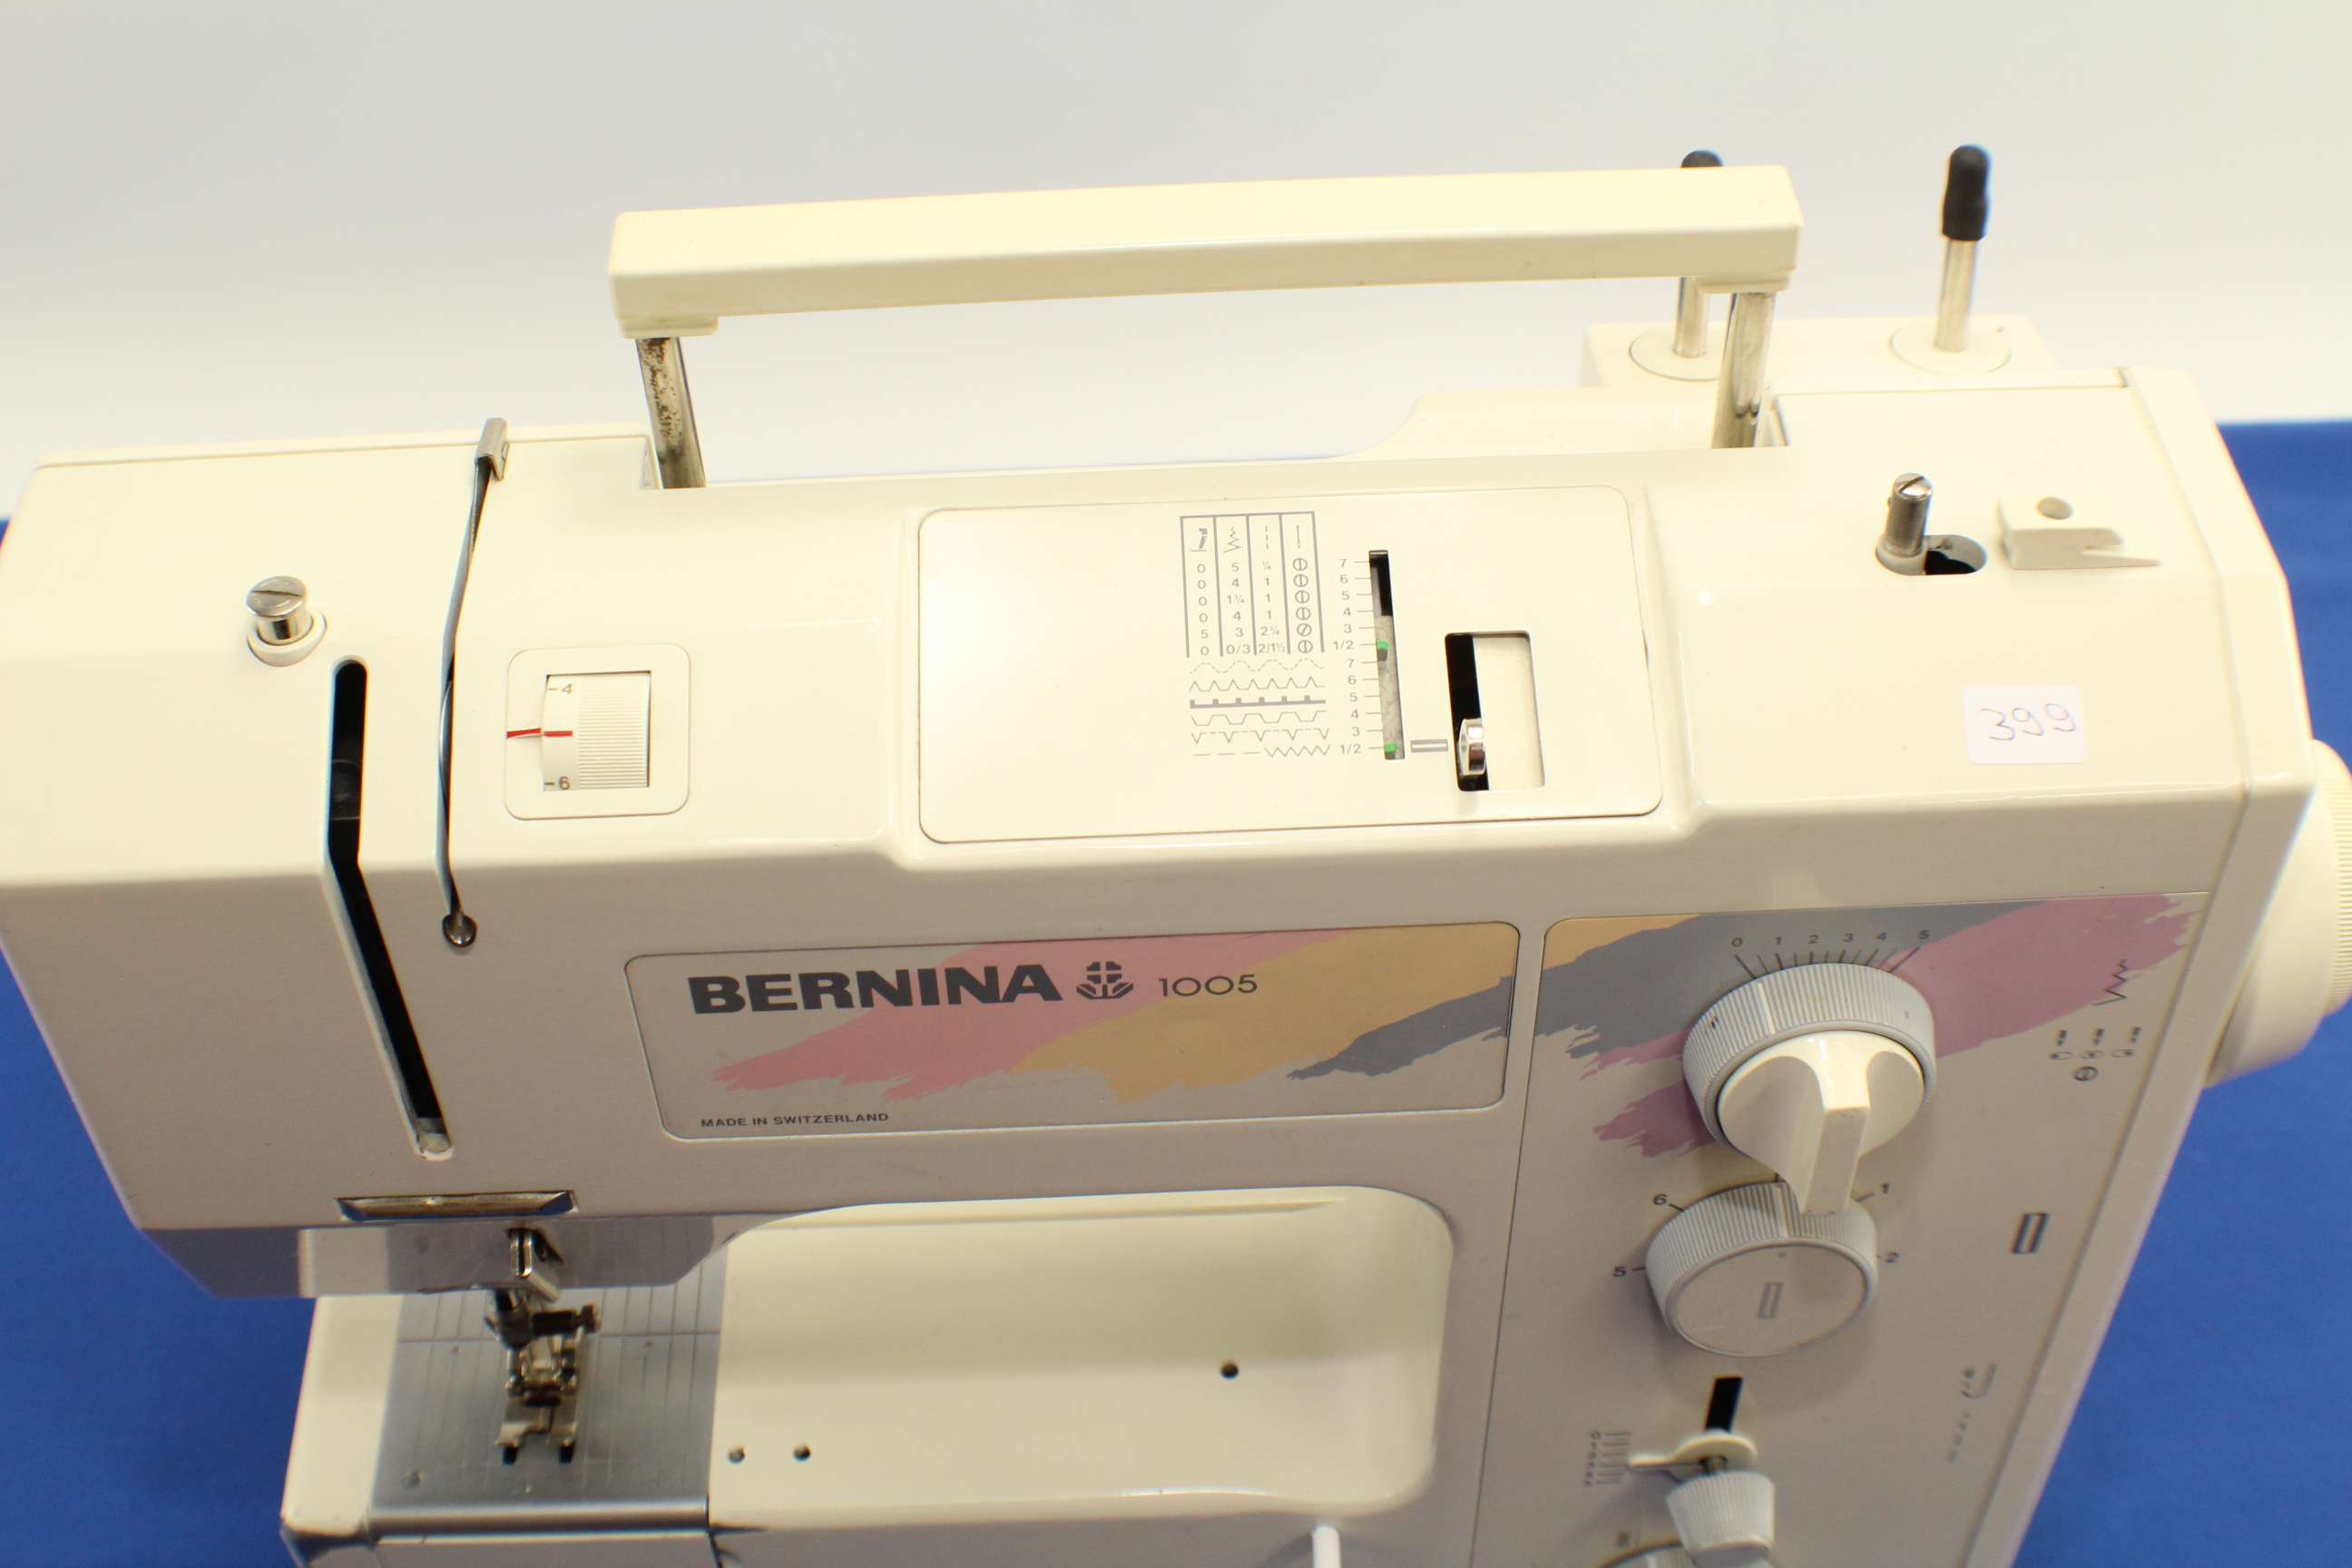 Bernina 1005 MADE IN SWITZERLAND gebraucht Seriennummer 0065958000